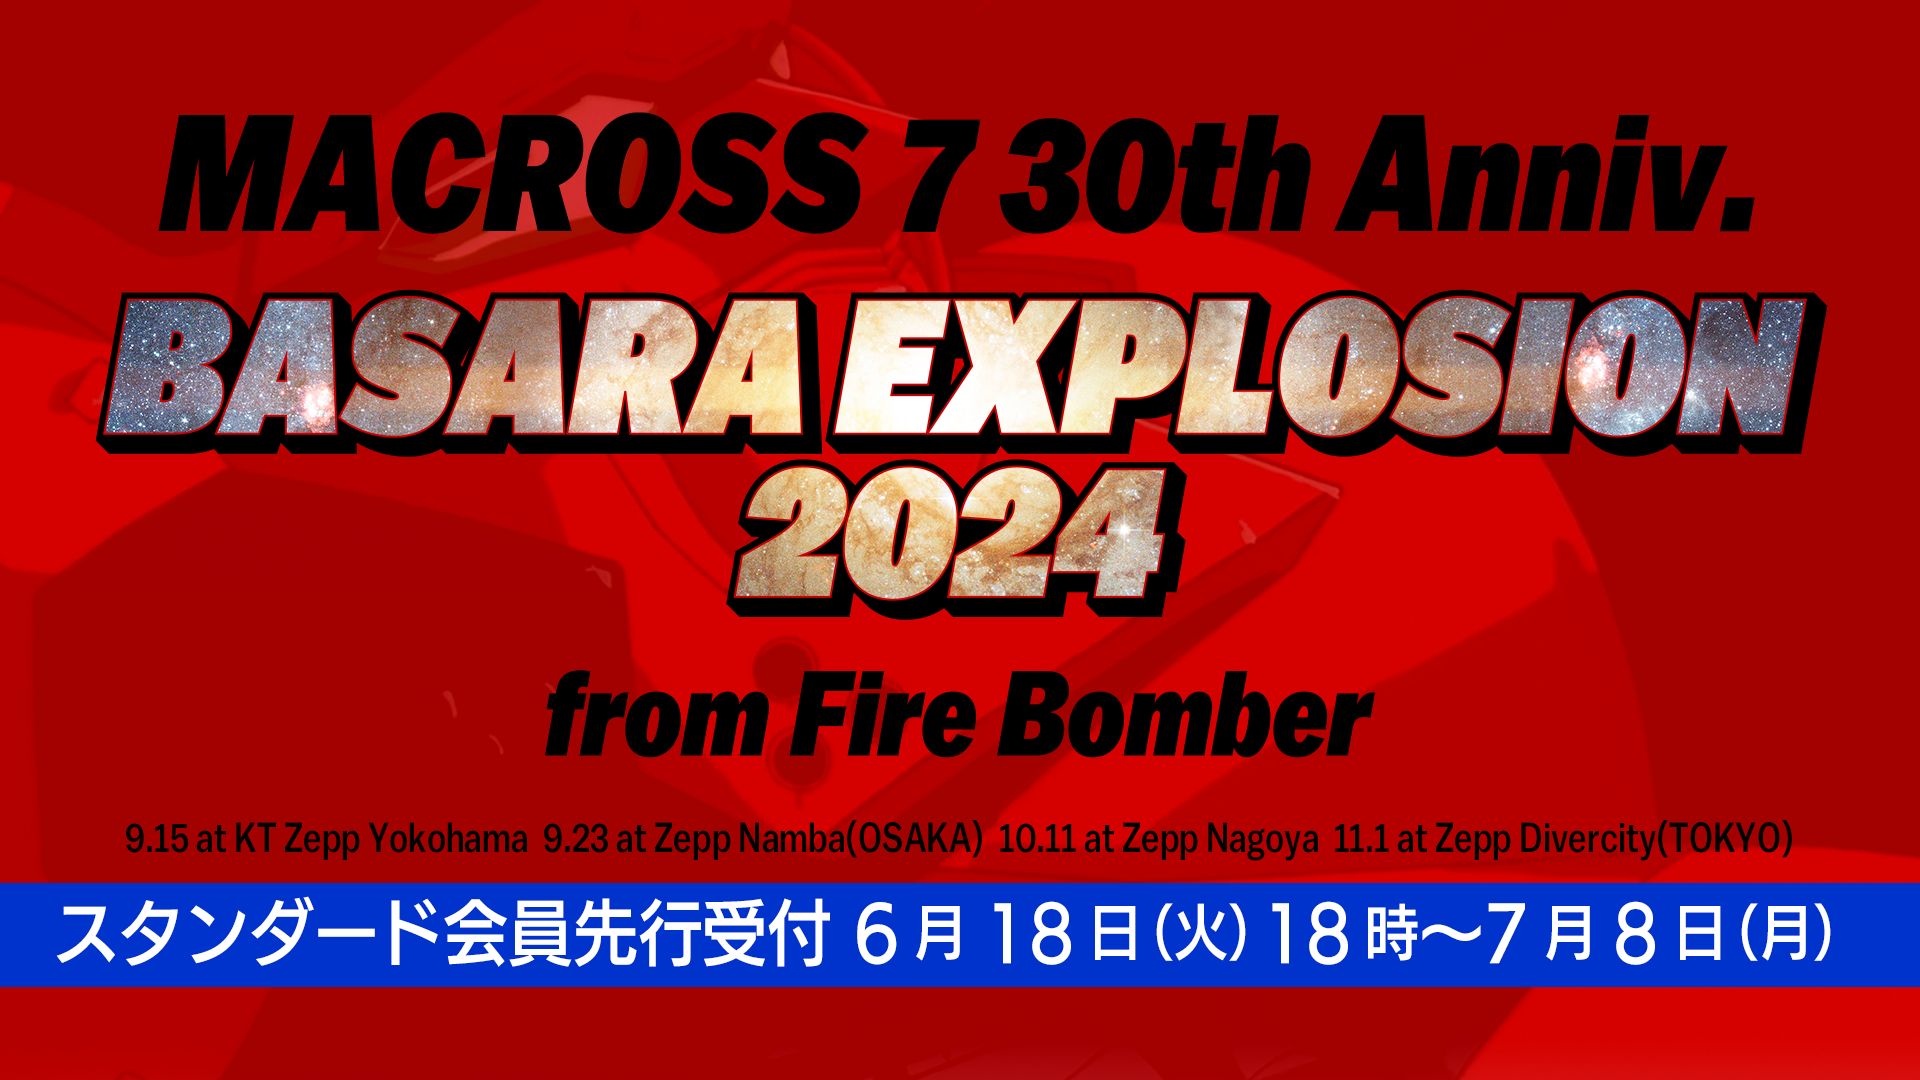 「MACROSS 7 30th Anniv. BASARA EXPLOSION 2024 from FIRE BOMBER」超時空ファンクラブ「マクロス魂」スタンダード会員先行